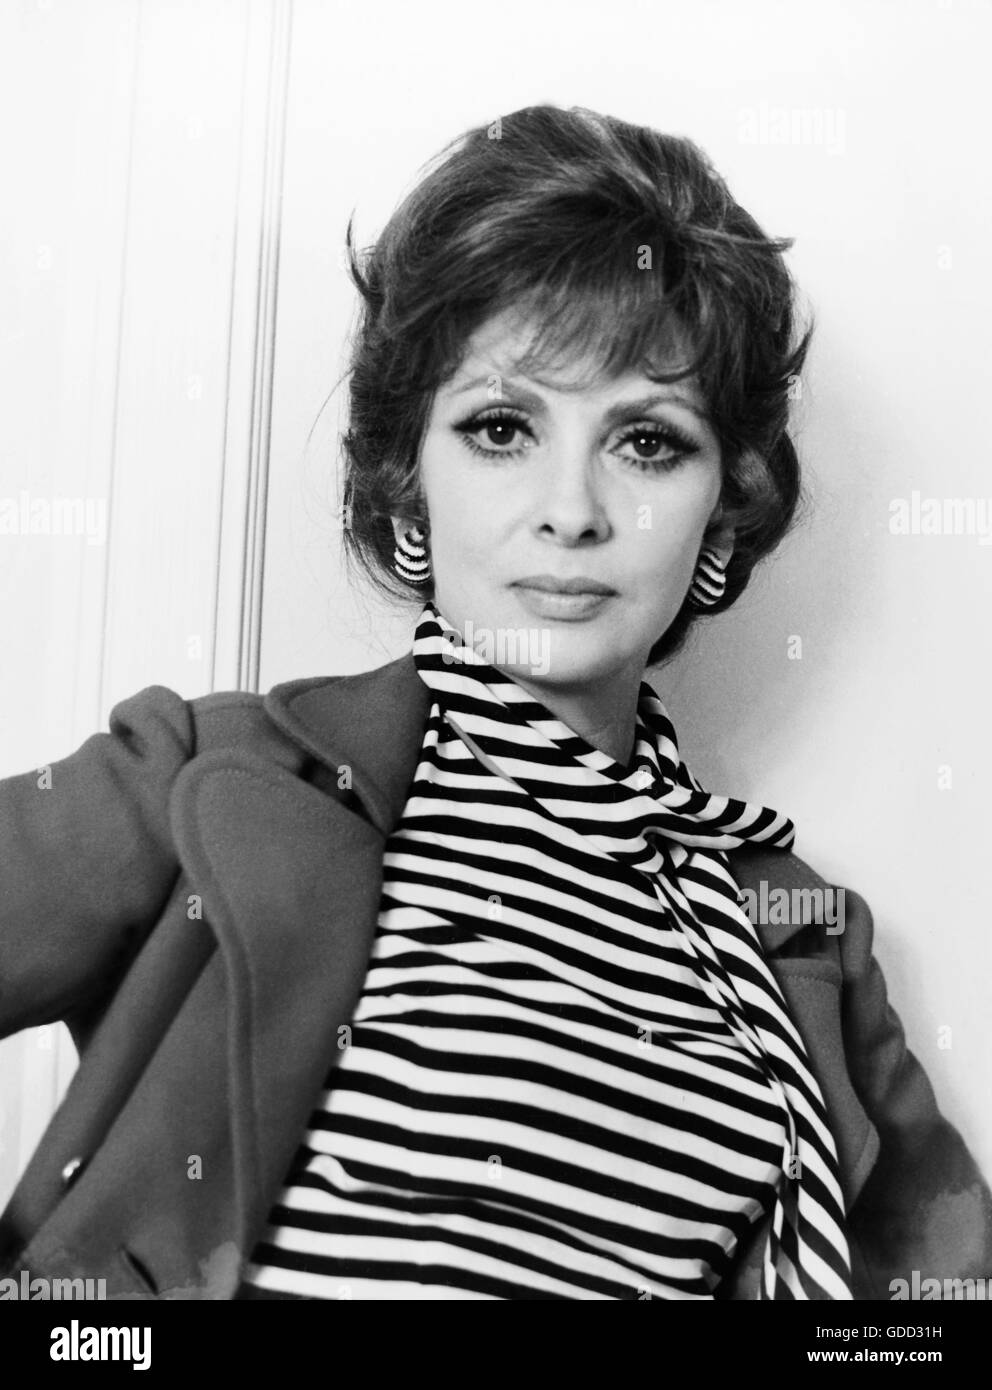 Lollobrigida, Gina, * 4.7.1927, attrice italiana, ritratto, 1974, Foto Stock